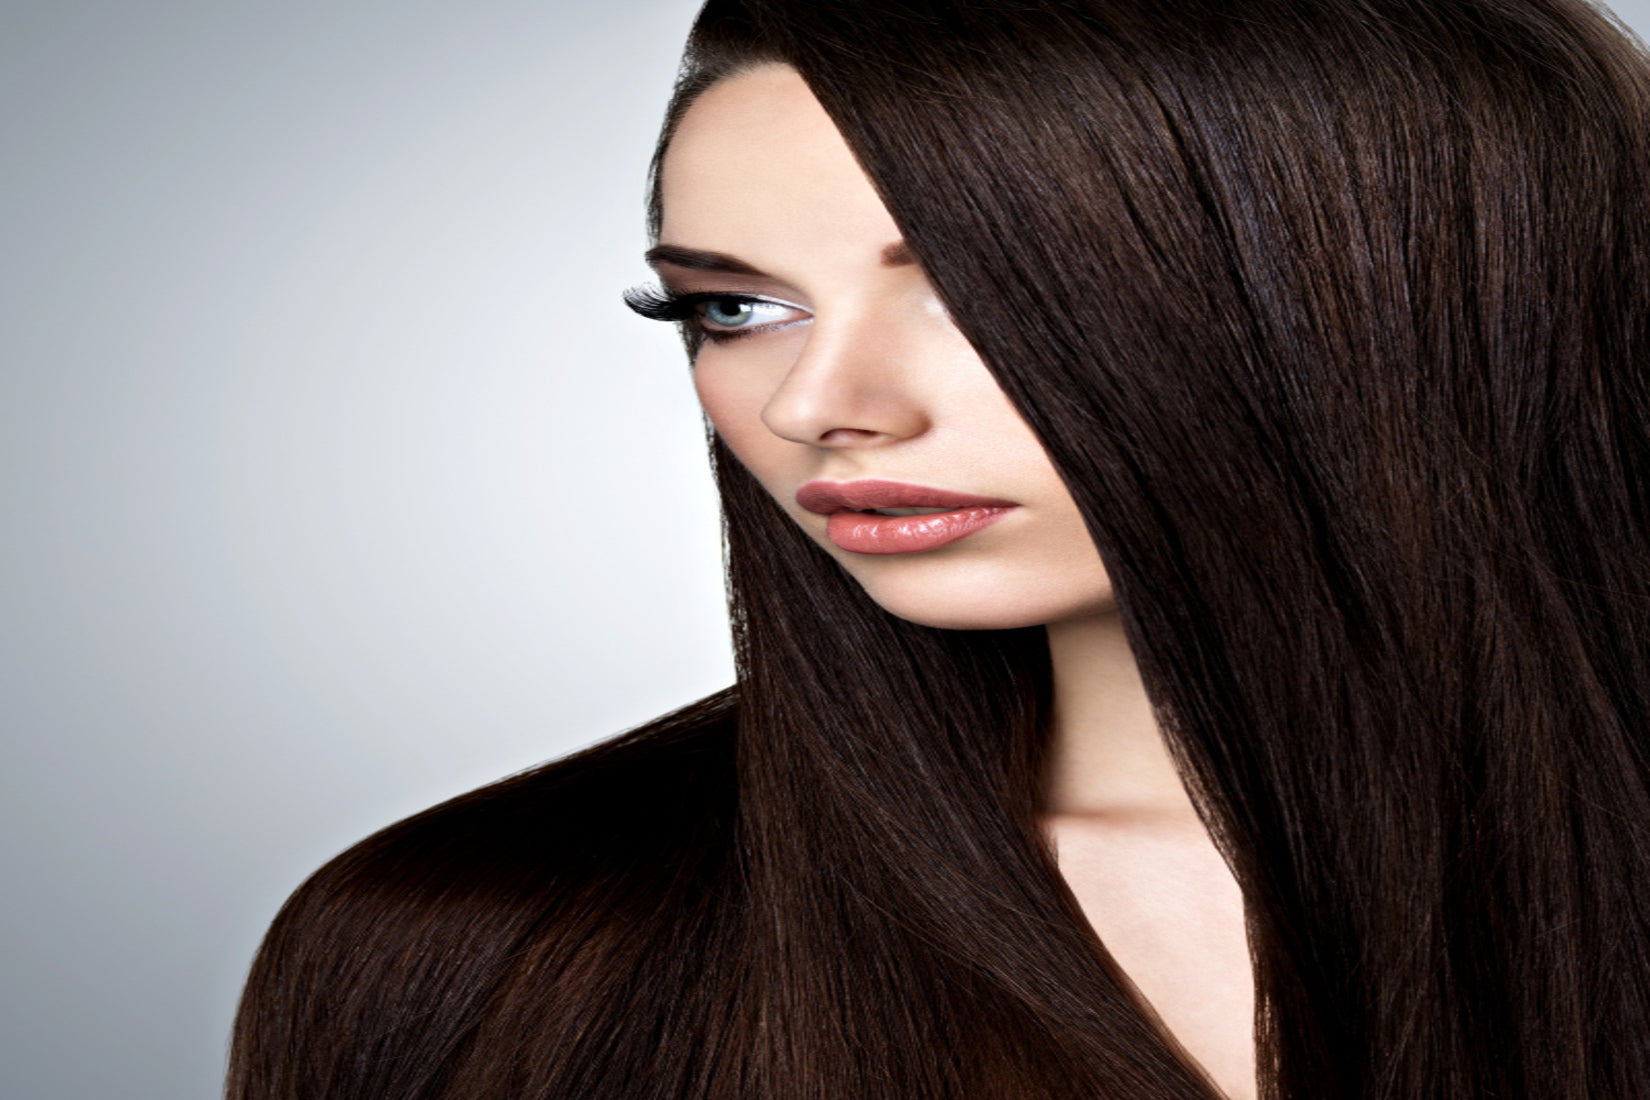 How to get long hair, hair growth, reduce hair fall